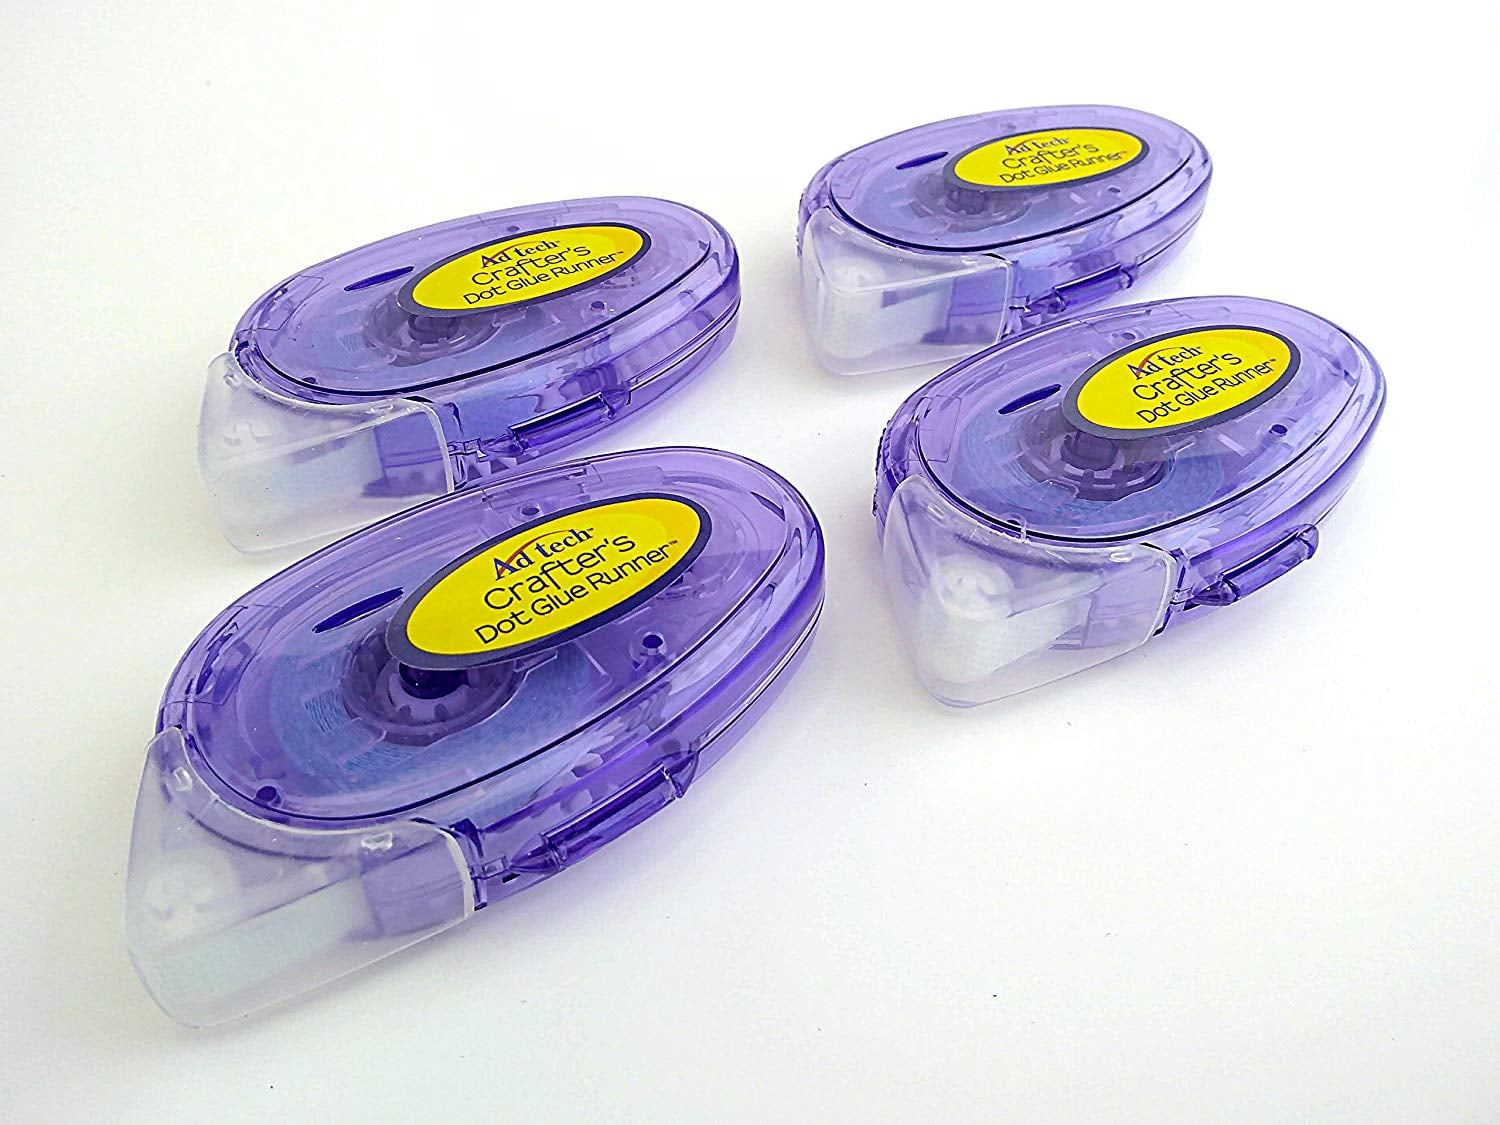 AdTech® Tape Glue Runner™ Permanent